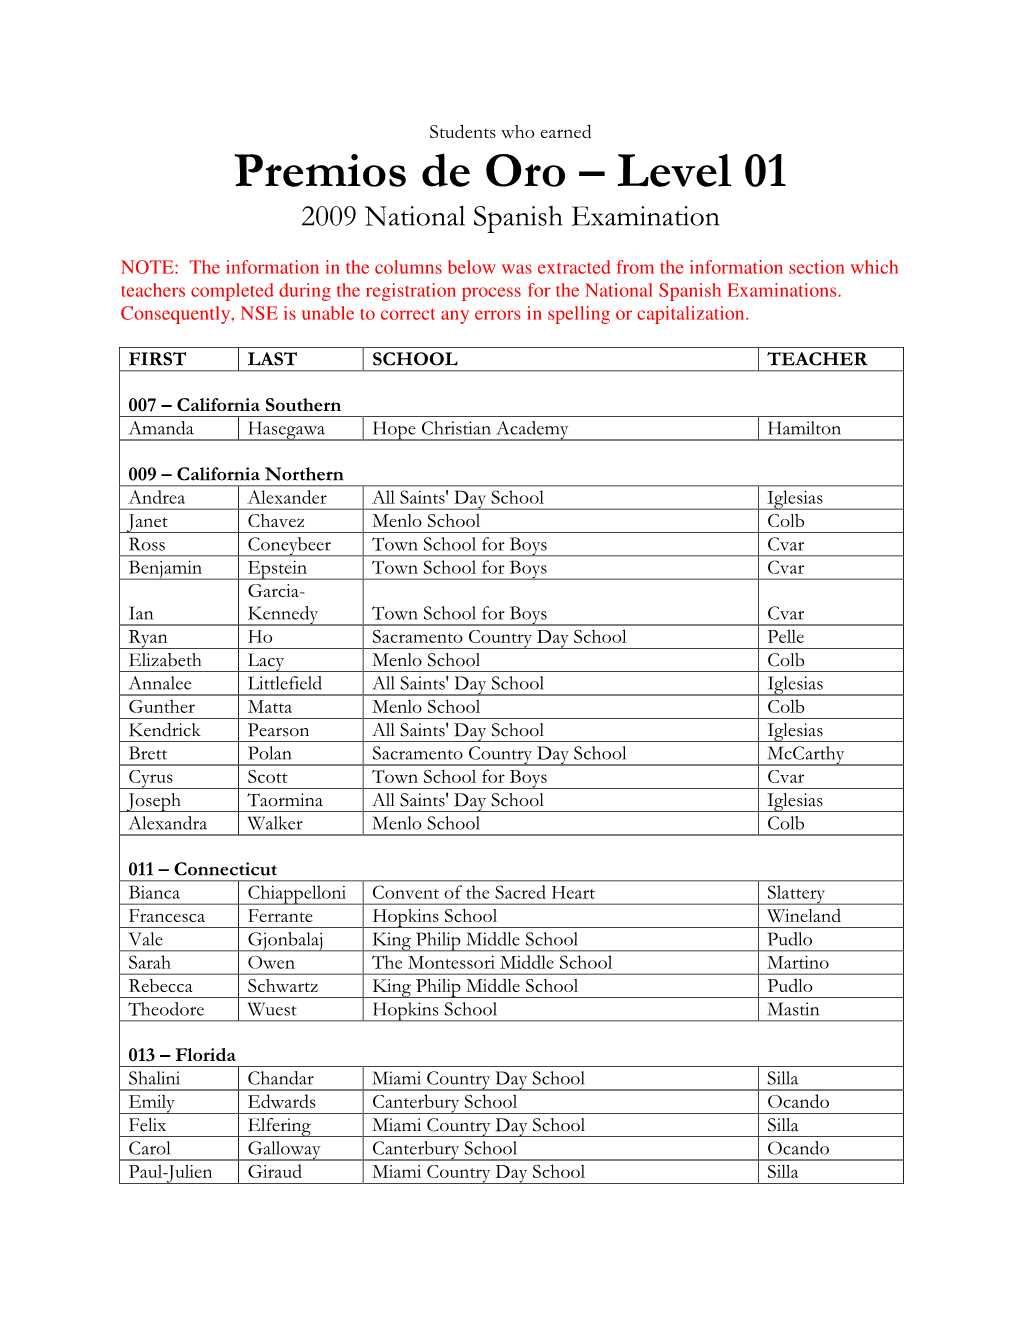 Level 01 2009 National Spanish Examination